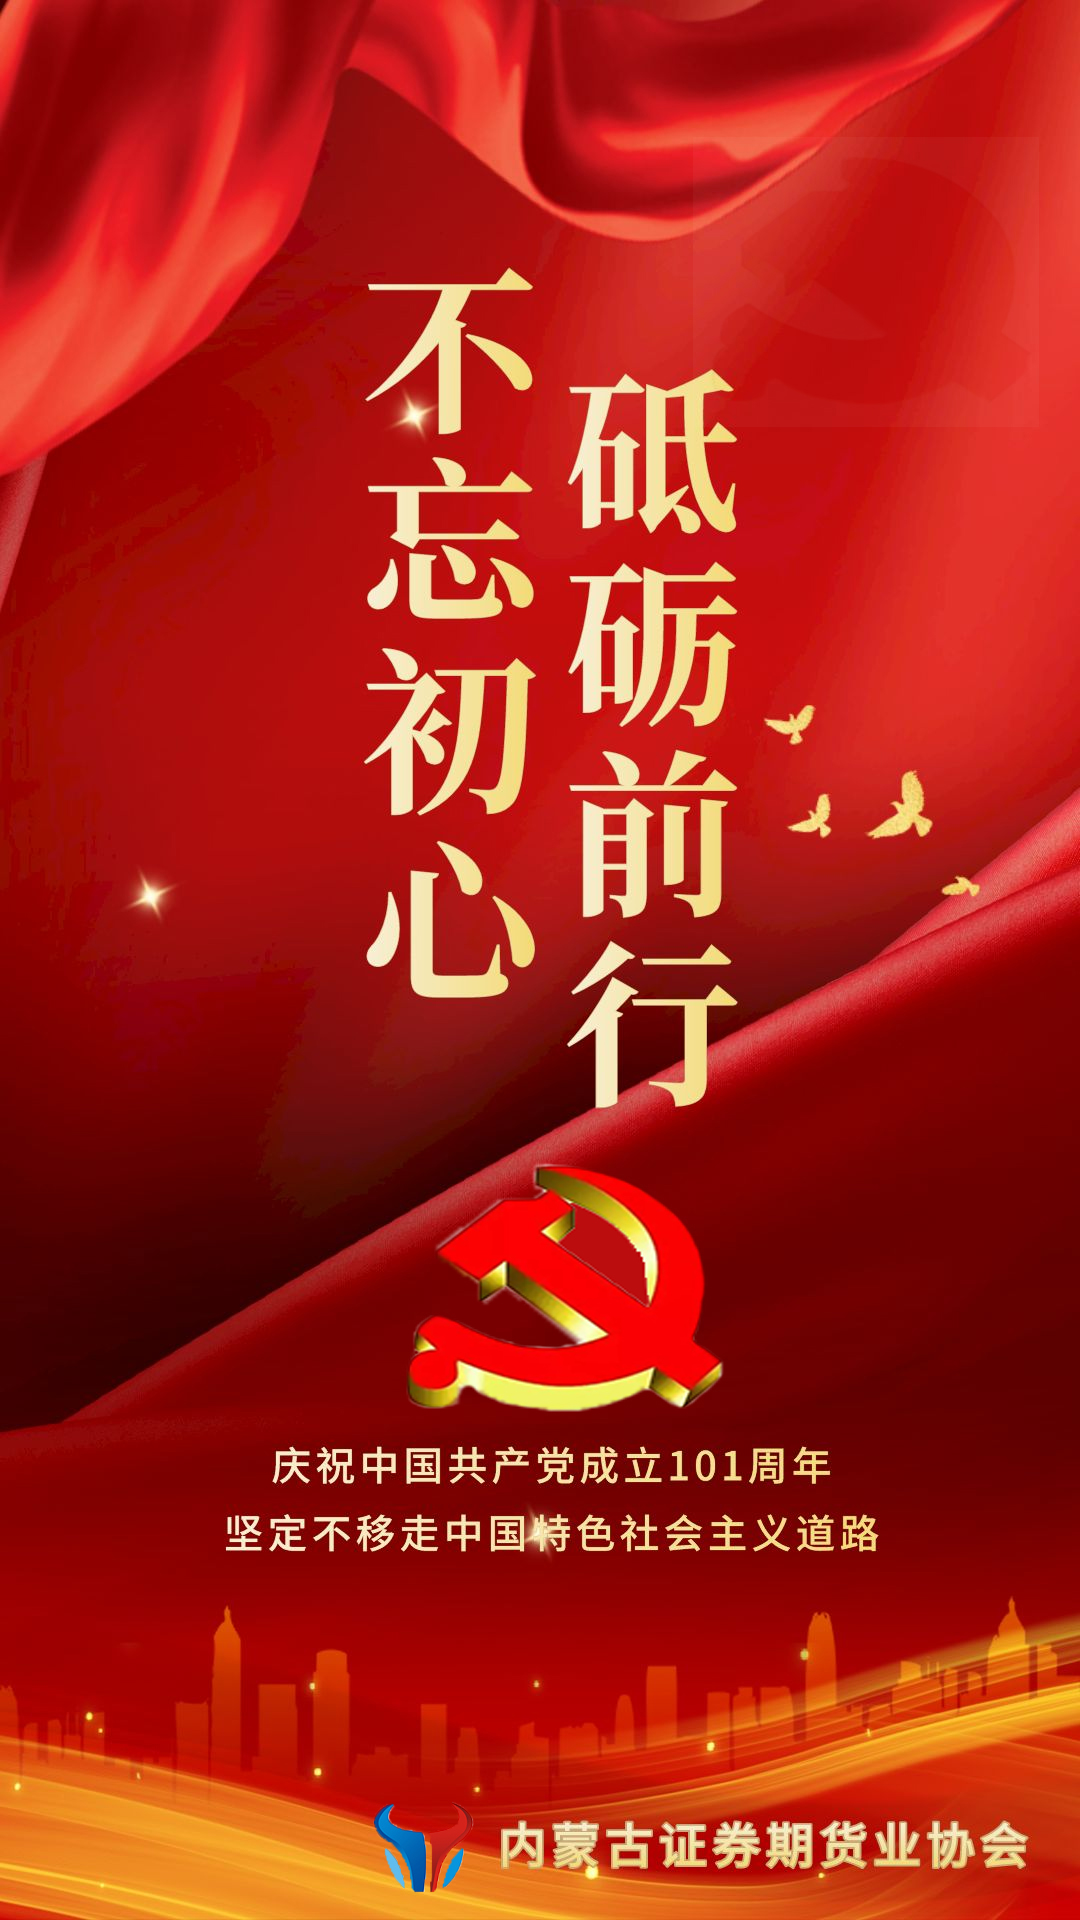 庆祝中国共产党成立101周年